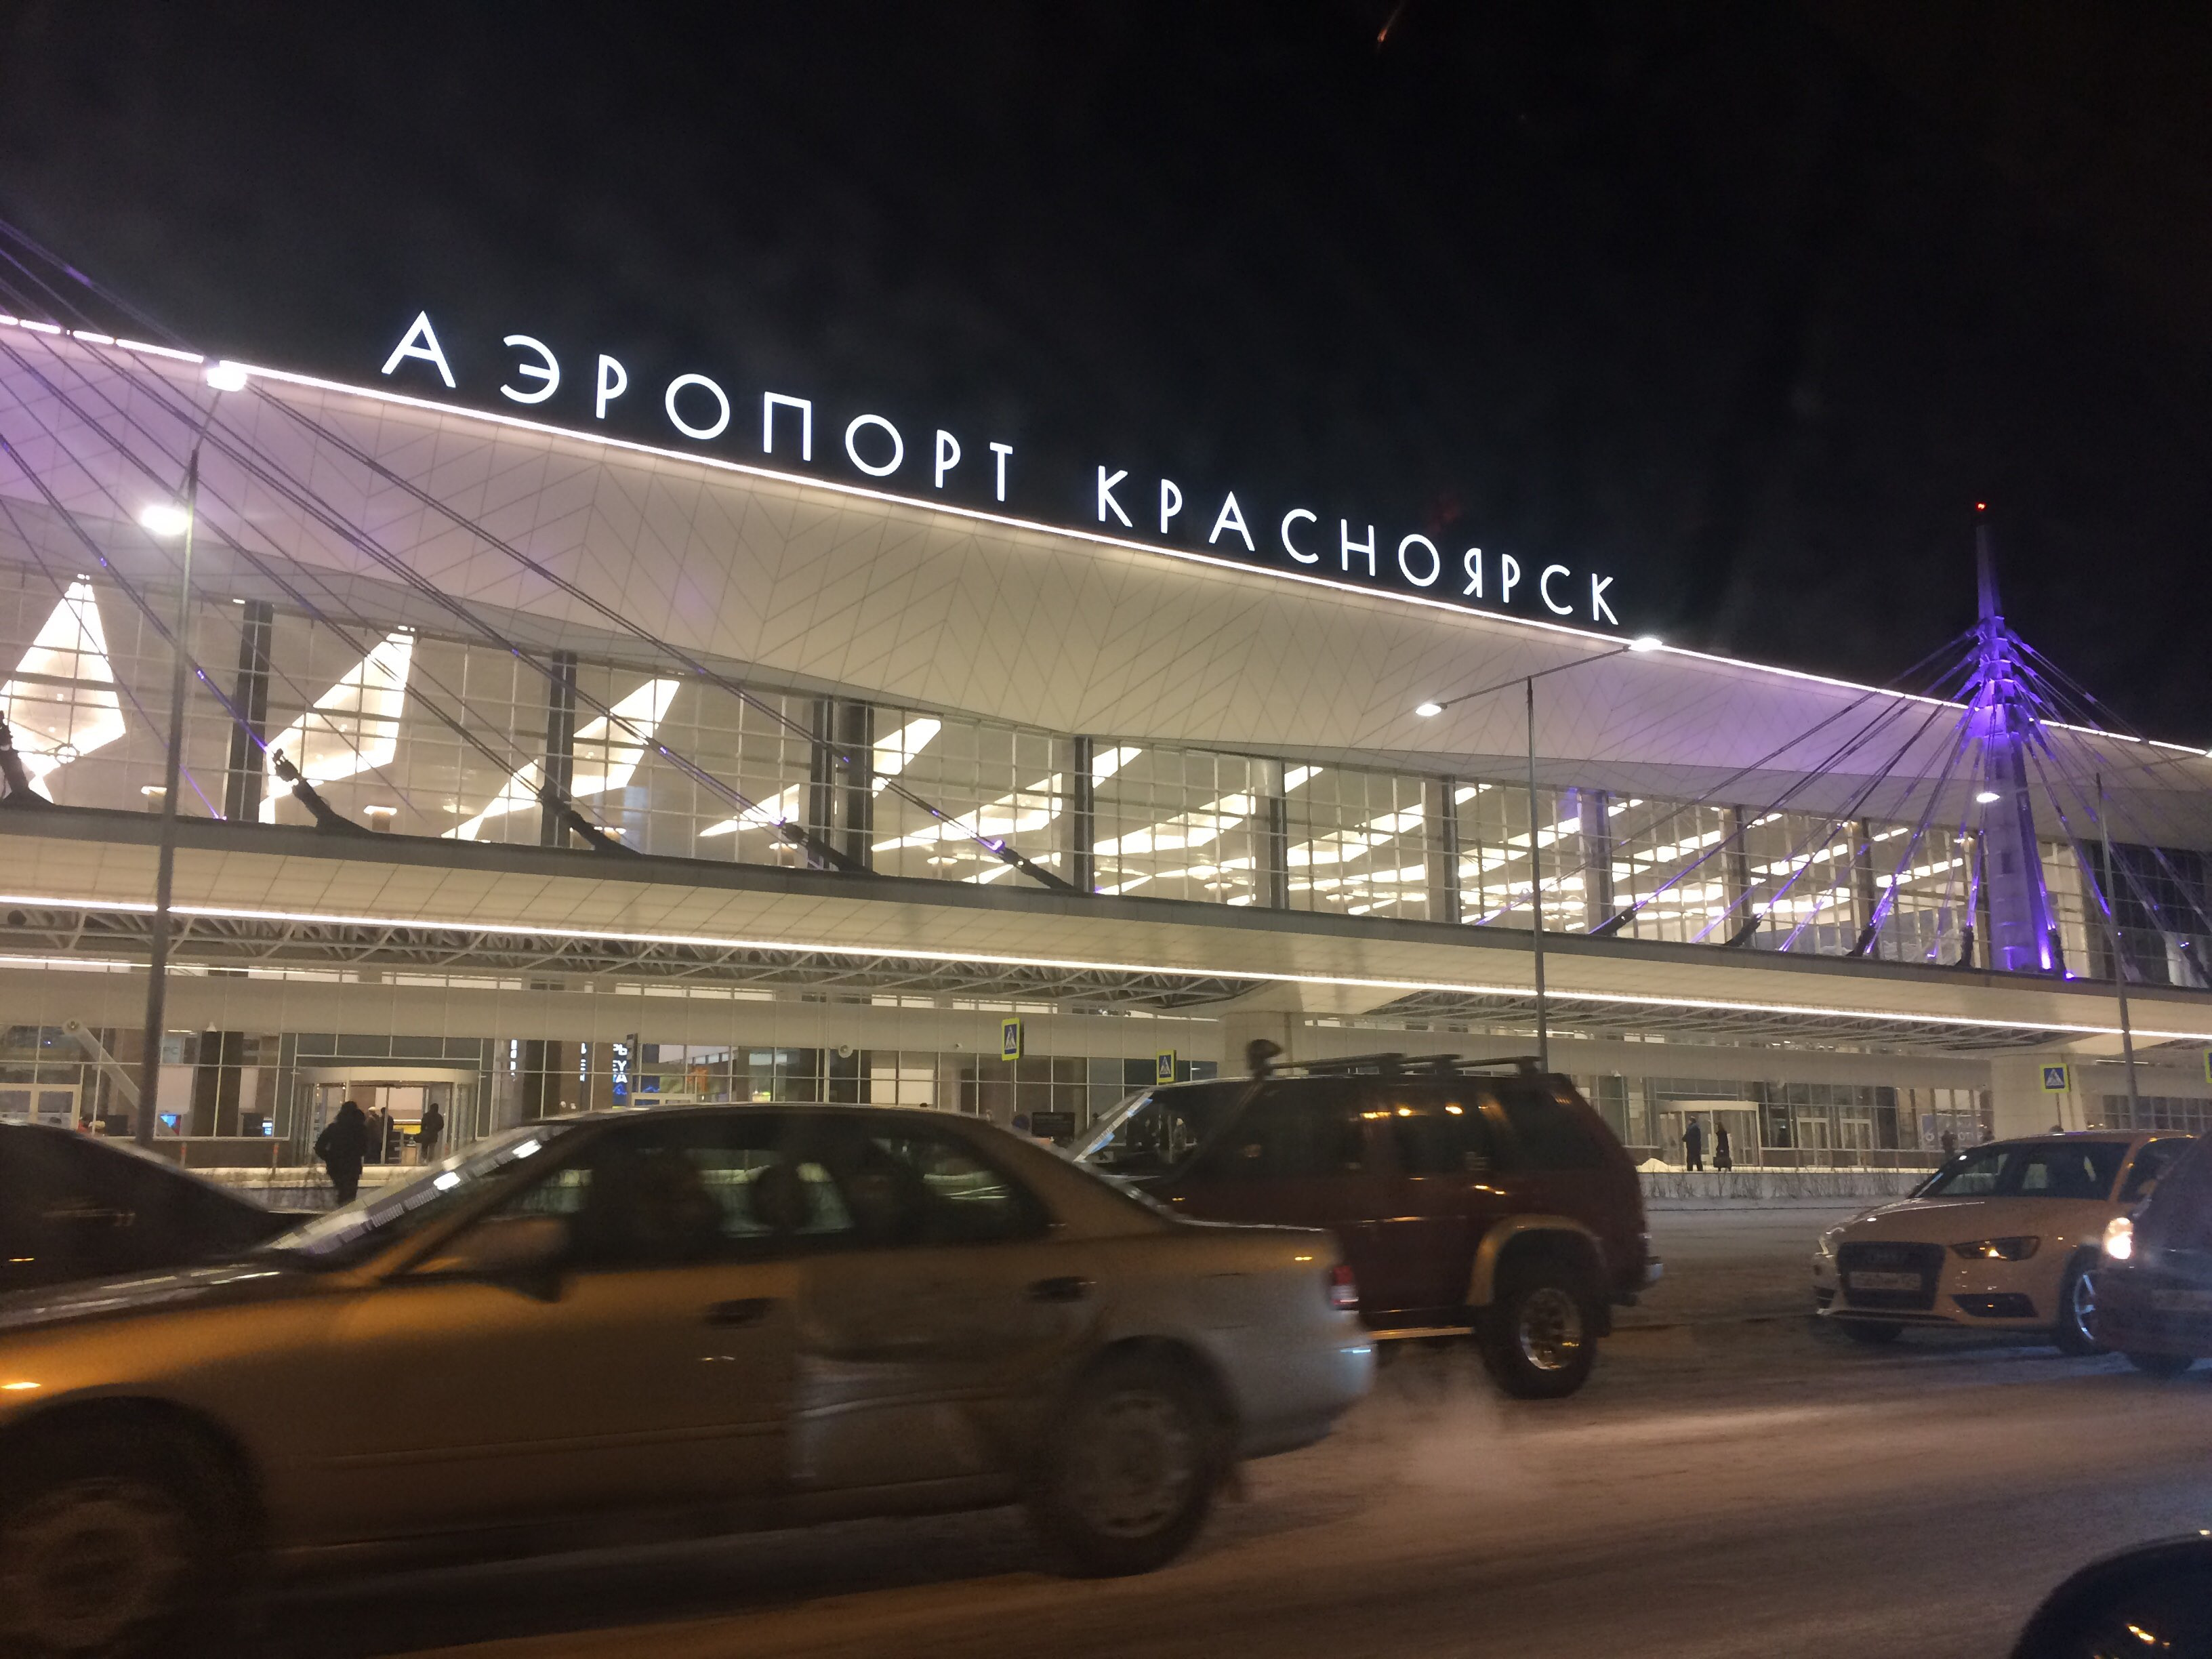 Емельяновский аэропорт Красноярск